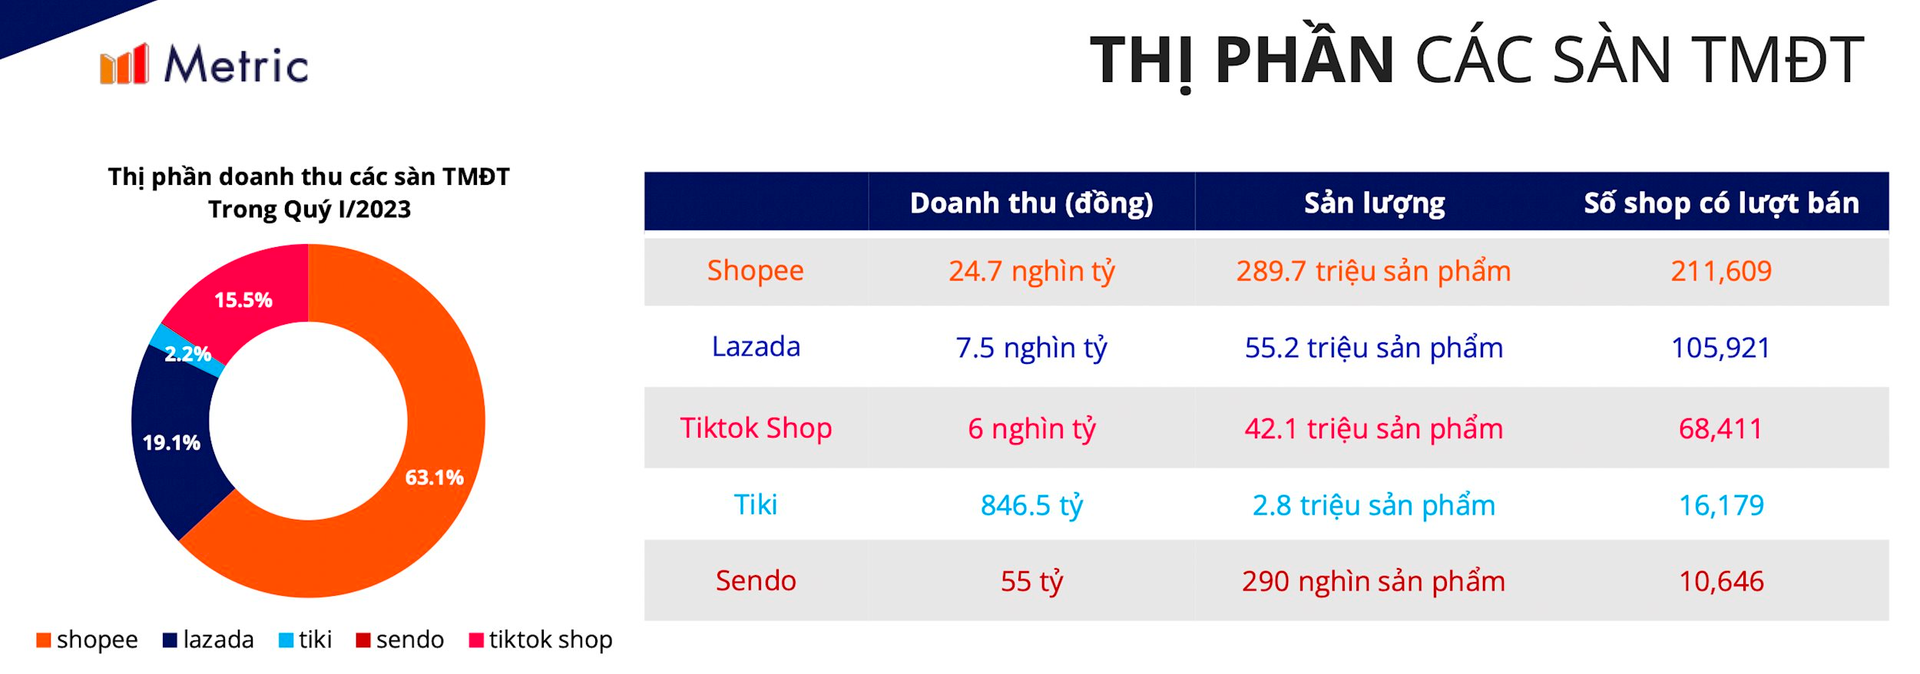 Tiki tụt dốc: Founder Trần Ngọc Thái Sơn đệ đơn từ chức, lỗ trăm triệu USD, doanh số quý 1/2023 chưa bằng 15% TikTok Shop - Ảnh 1.